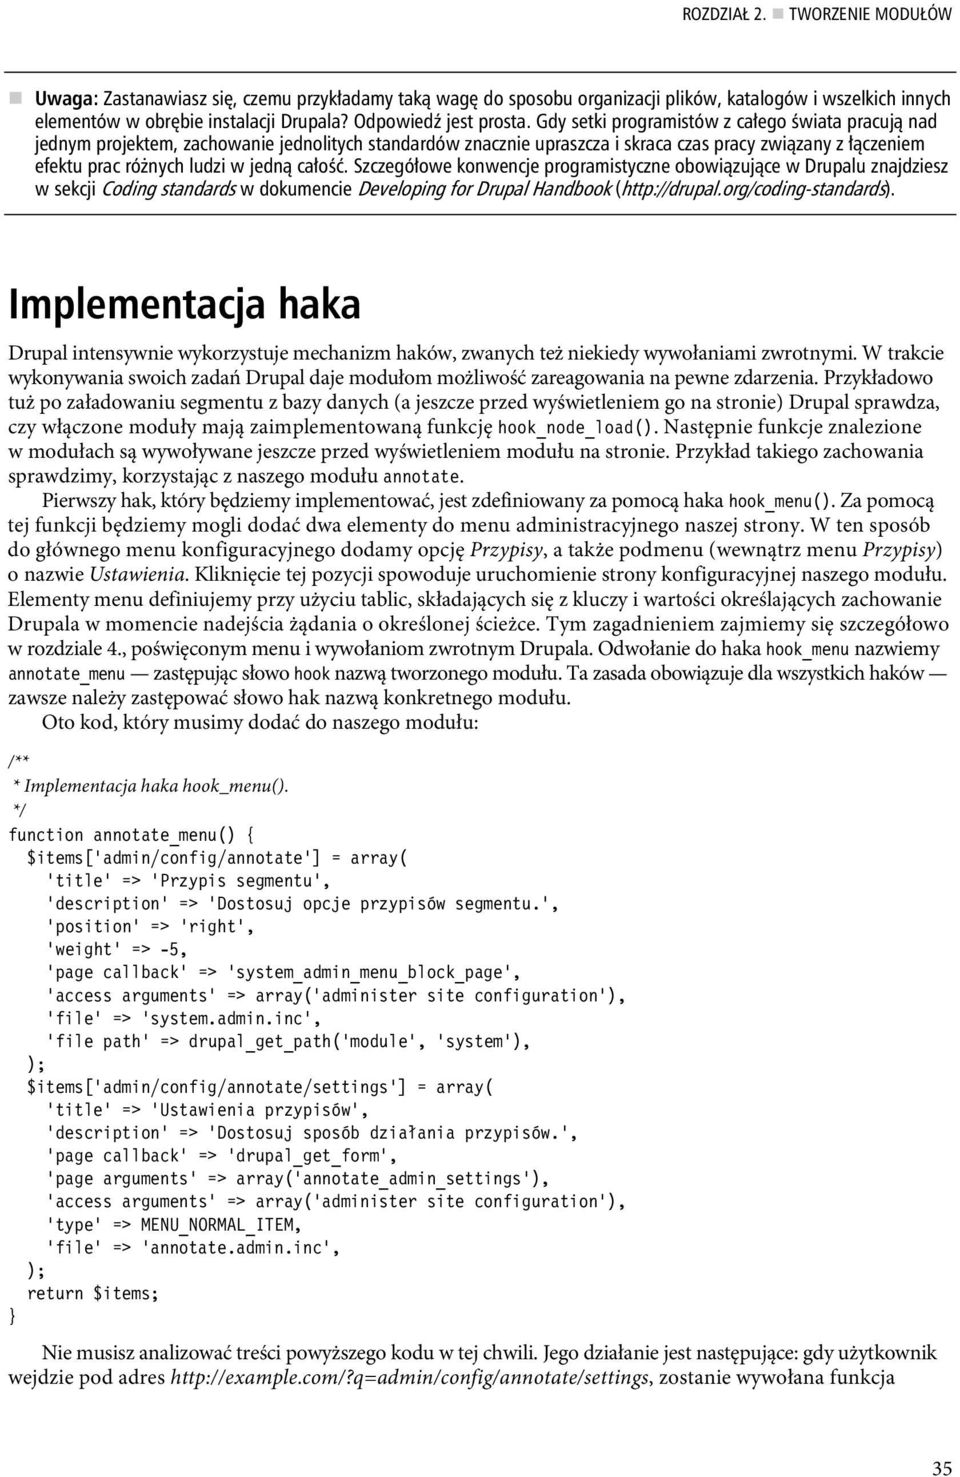 Szczegó owe konwencje programistyczne obowi zuj ce w Drupalu znajdziesz w sekcji Coding standards w dokumencie Developing for Drupal Handbook (http://drupal.org/coding-standards).